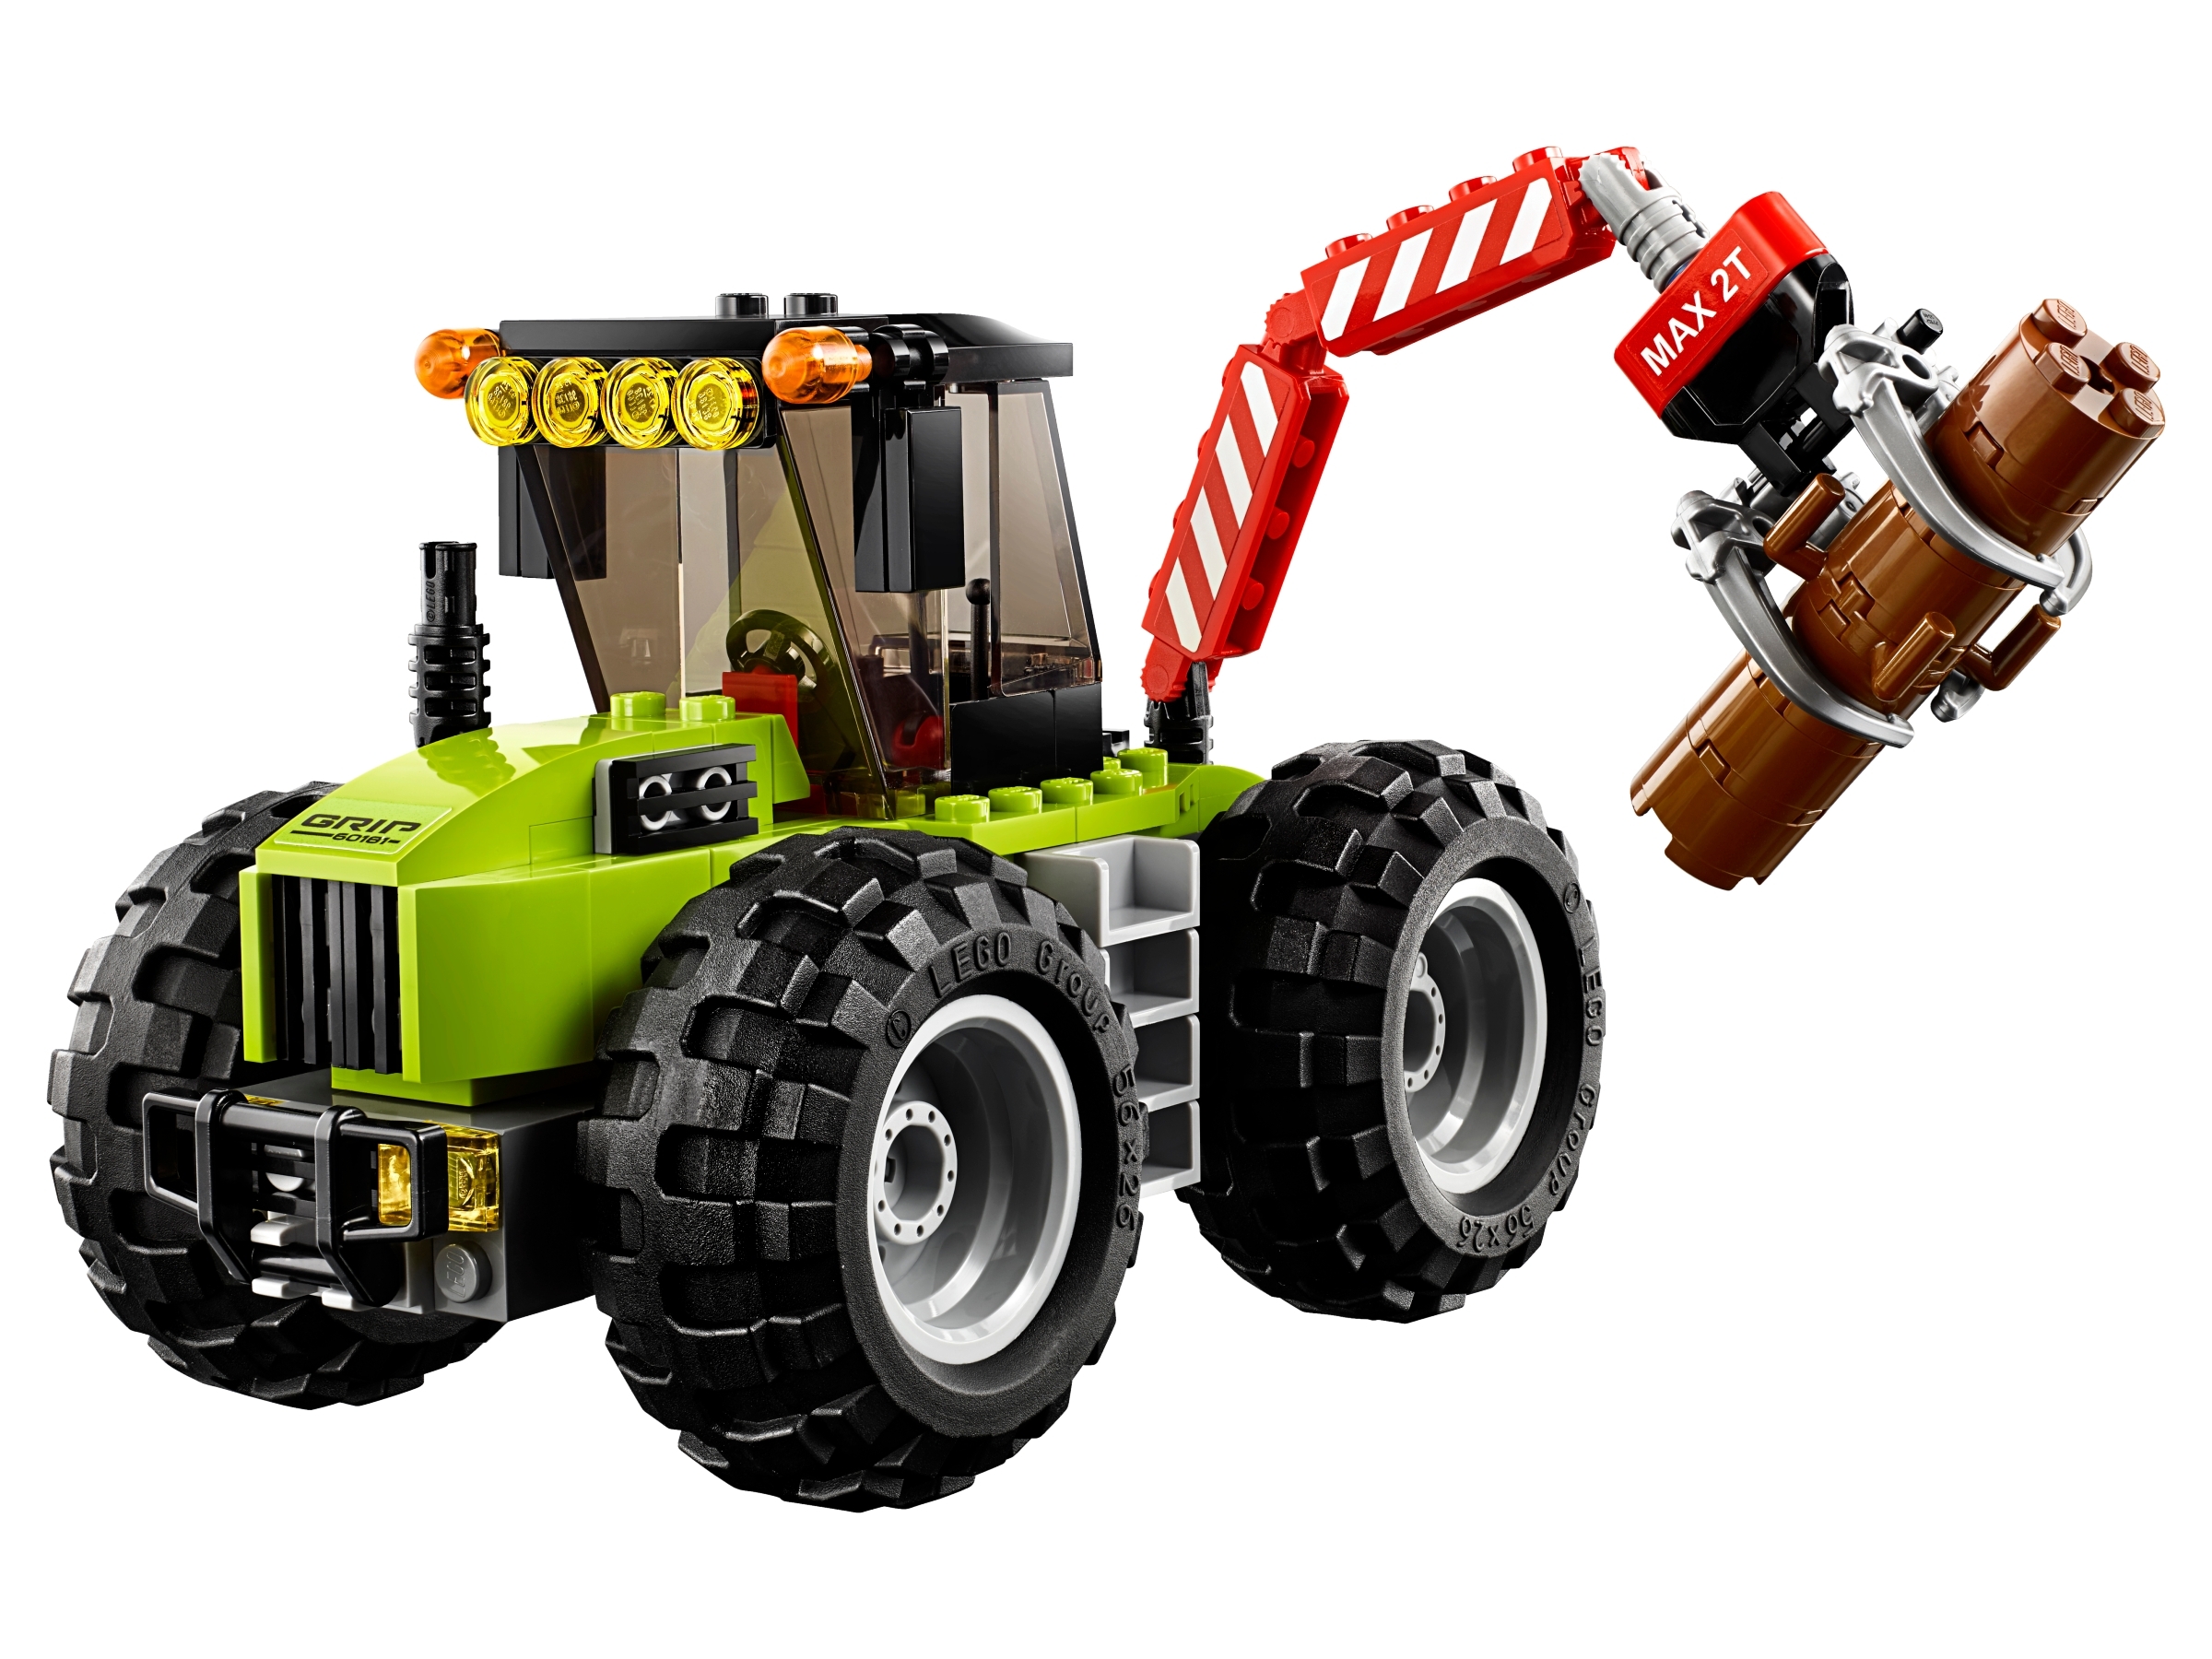 Le tracteur forestier 60181, City